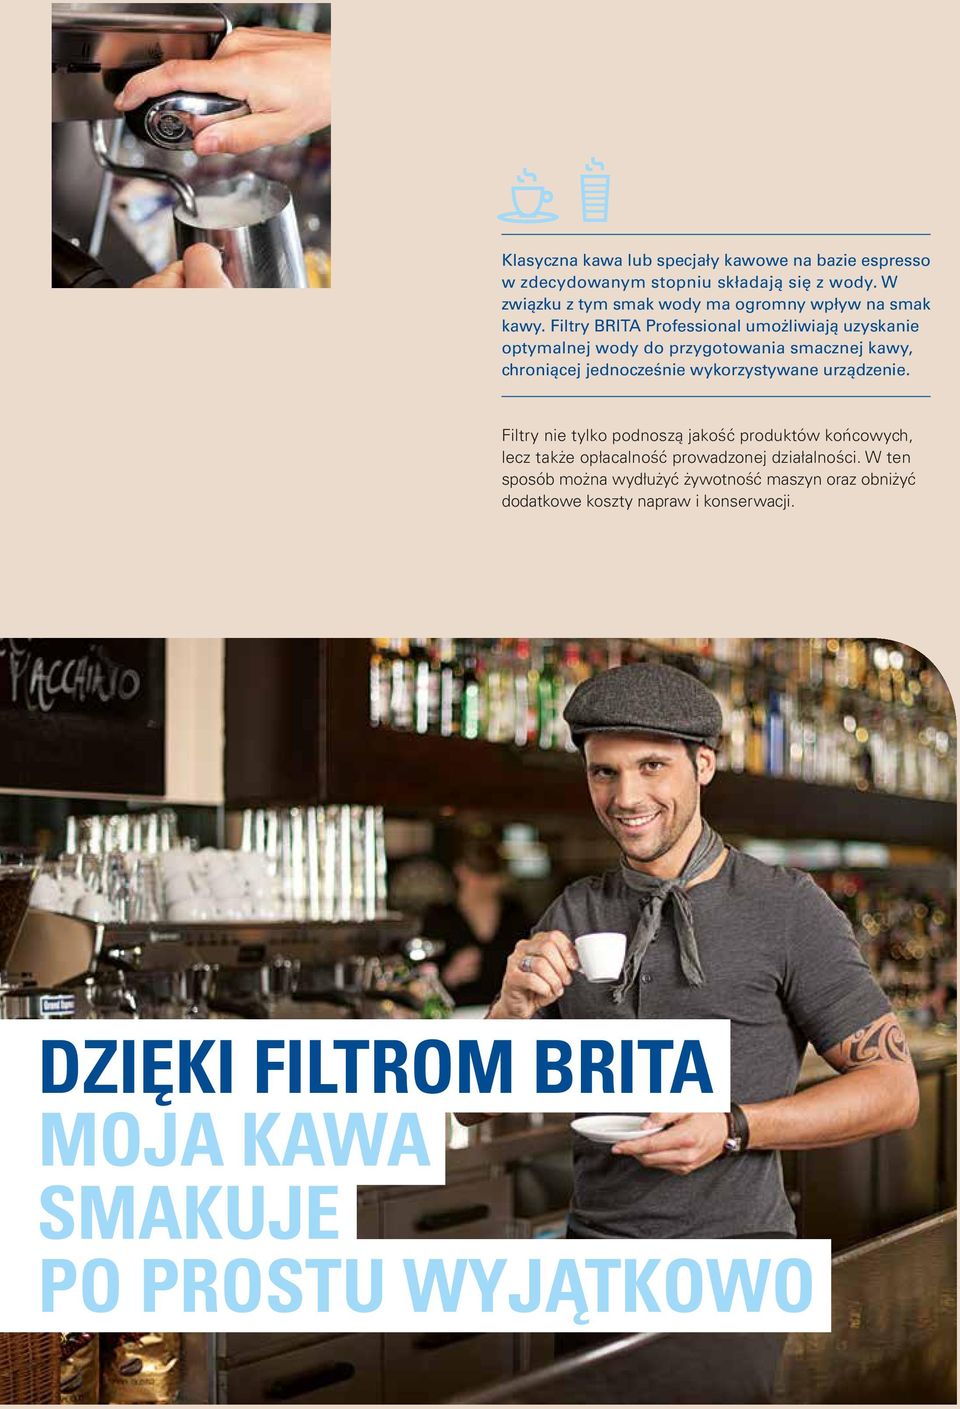 Filtry BRITA Professional umożliwiają uzyskanie optymalnej wody do przygotowania smacznej kawy, chroniącej jednocześnie wykorzystywane